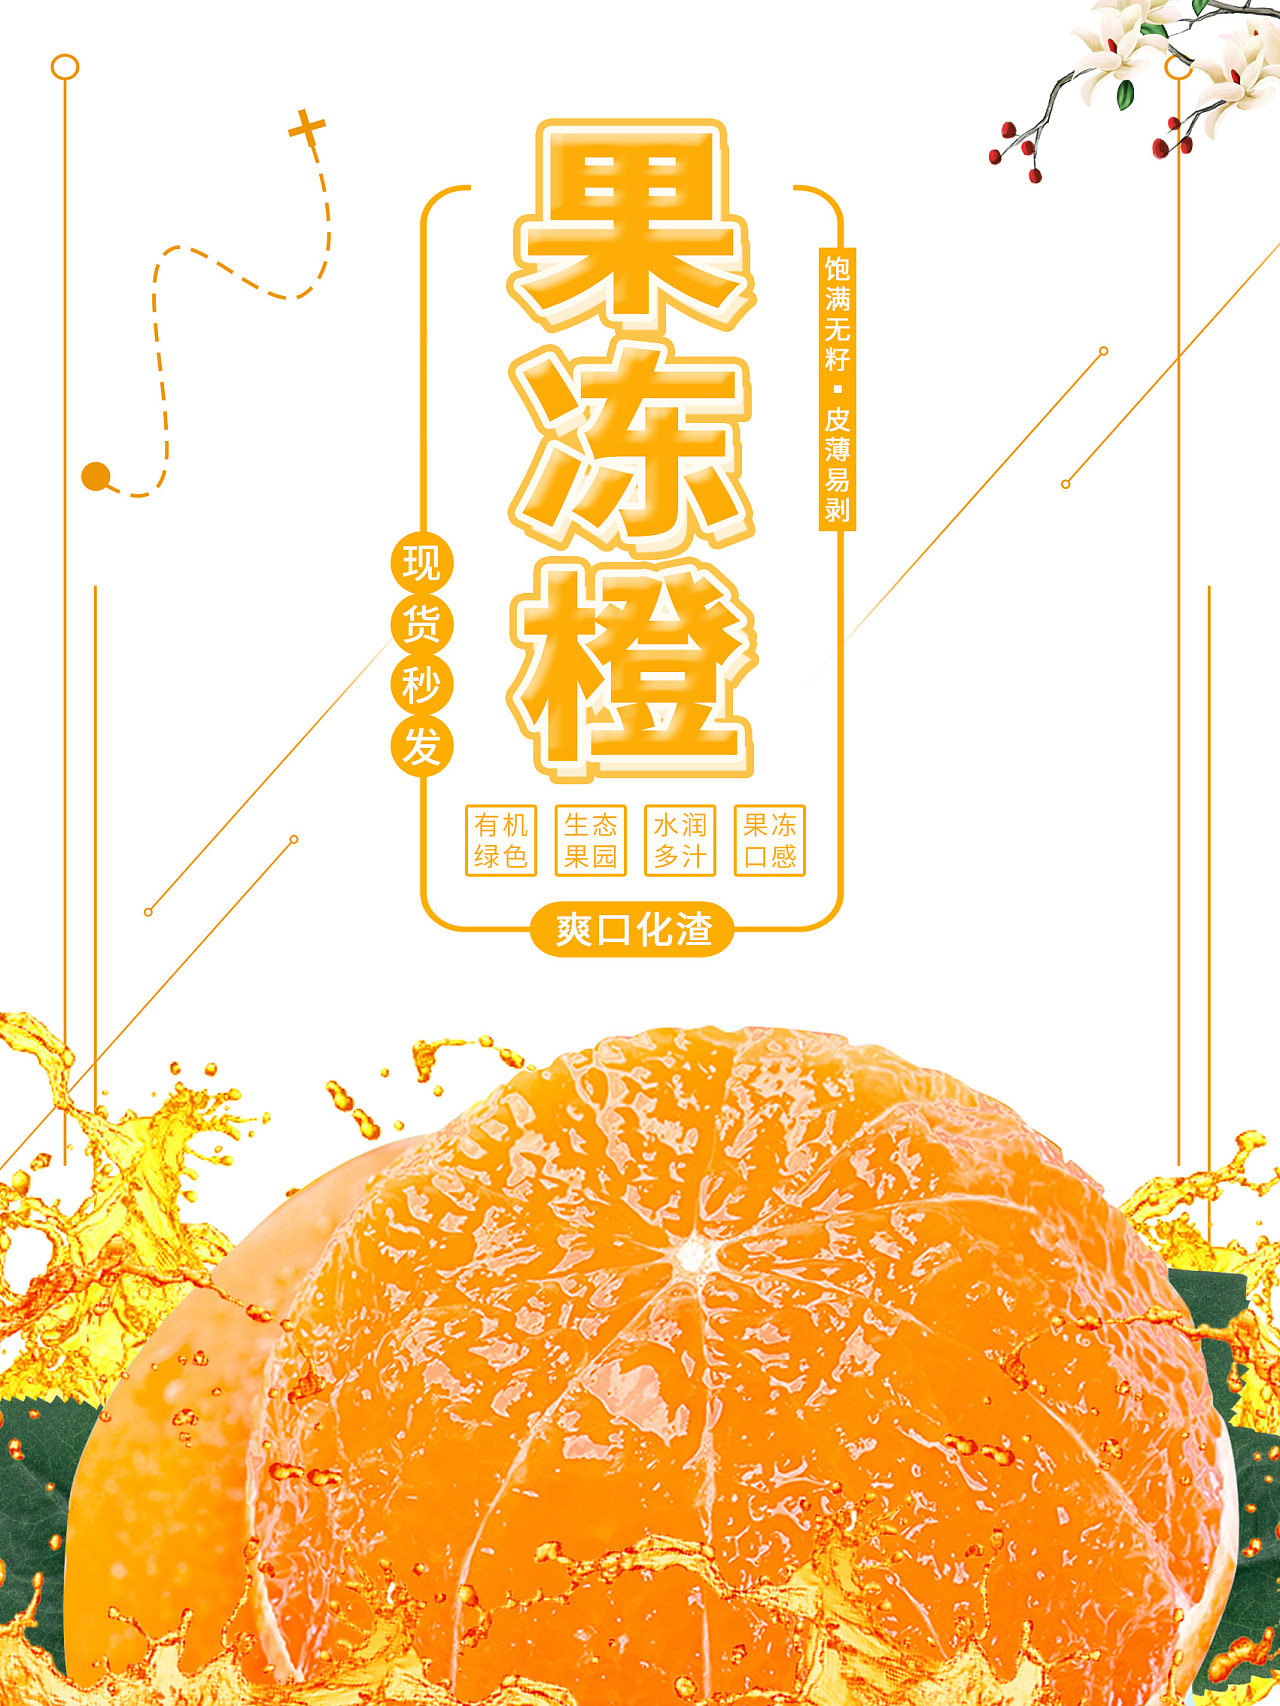 果冻橙海报图片